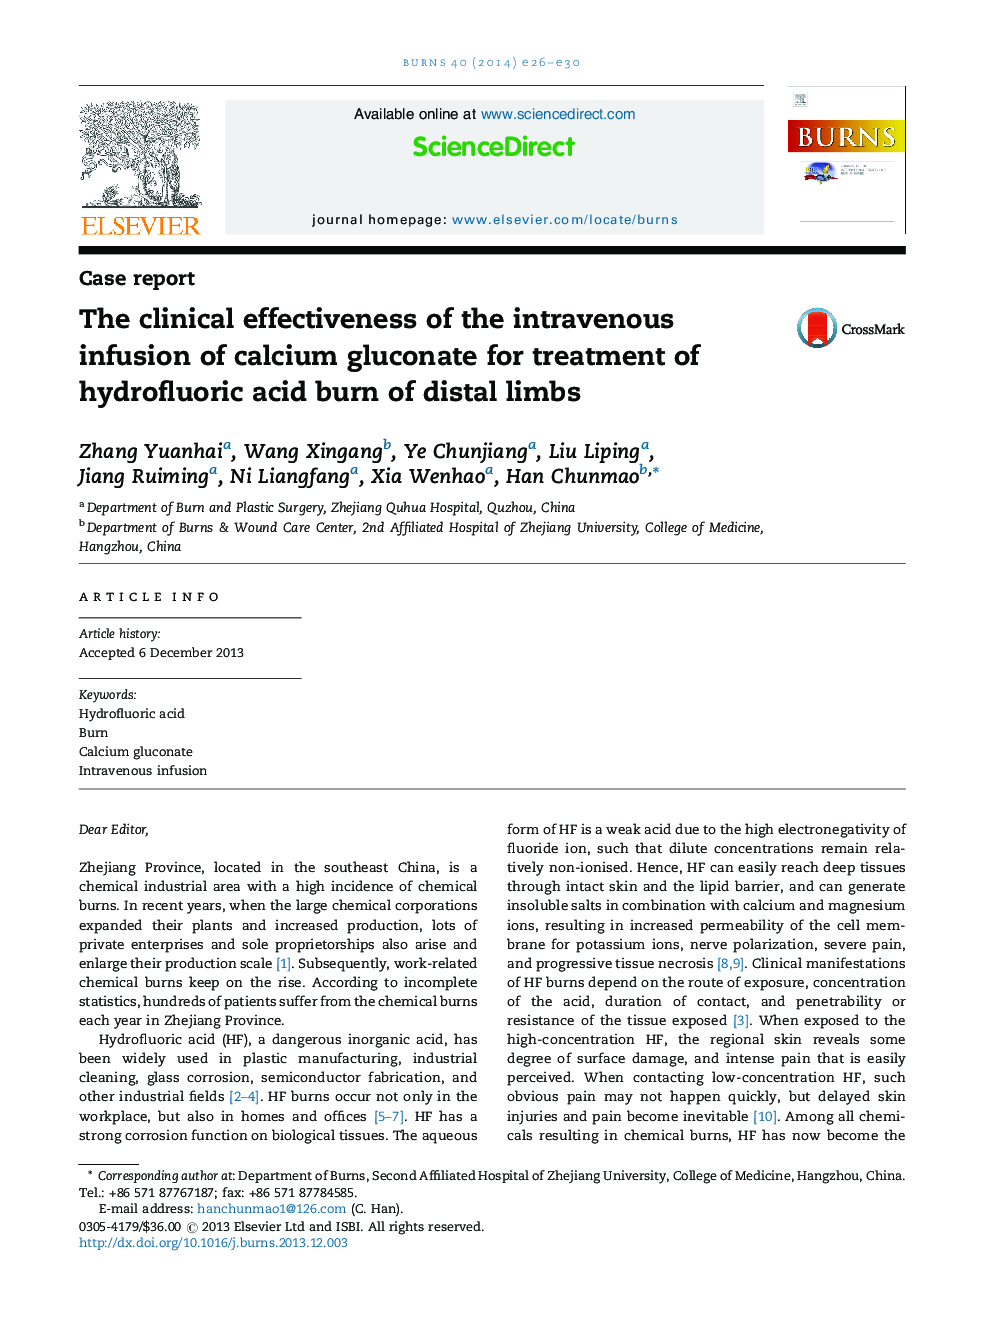 اثربخشی بالینی تزریق داخل وریدی کلسیم گلوکونات برای درمان اسید هیدروفلوئوریک سوختگی اندام های دندانی 